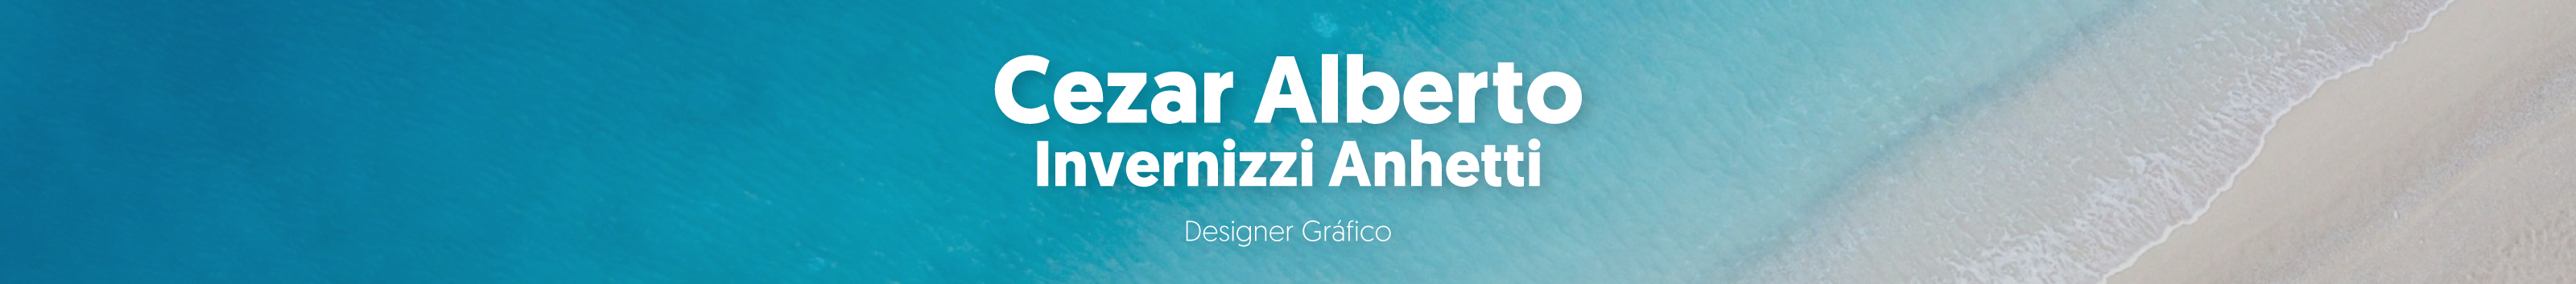 Profil-Banner von Cezar Alberto